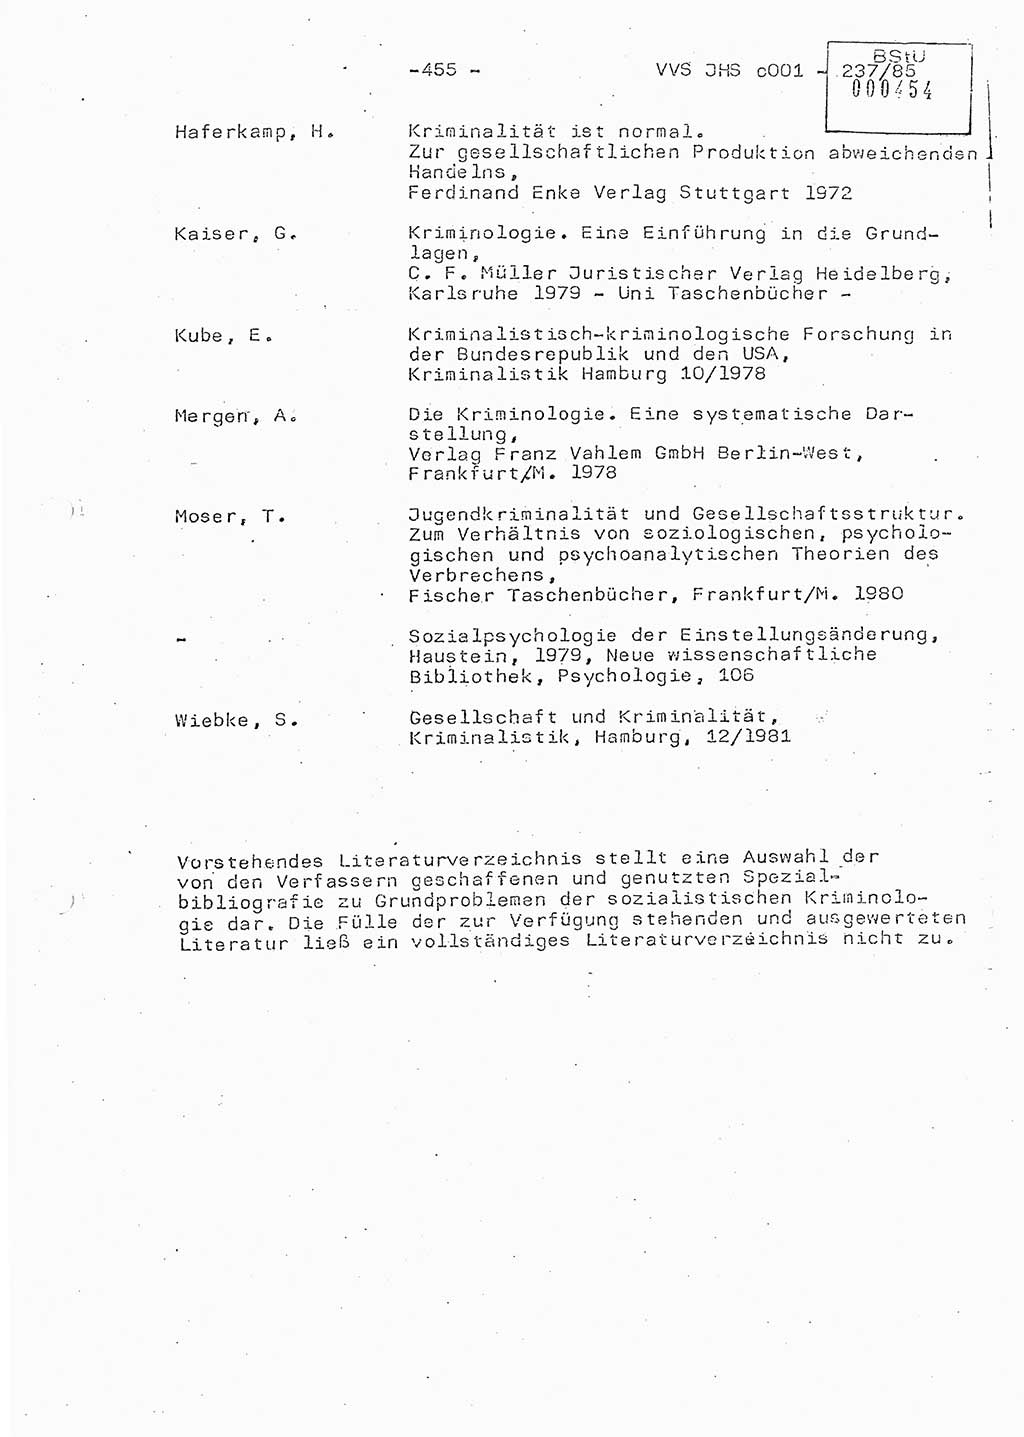 Dissertation Oberstleutnant Peter Jakulski (JHS), Oberstleutnat Christian Rudolph (HA Ⅸ), Major Horst Böttger (ZMD), Major Wolfgang Grüneberg (JHS), Major Albert Meutsch (JHS), Ministerium für Staatssicherheit (MfS) [Deutsche Demokratische Republik (DDR)], Juristische Hochschule (JHS), Vertrauliche Verschlußsache (VVS) o001-237/85, Potsdam 1985, Seite 455 (Diss. MfS DDR JHS VVS o001-237/85 1985, S. 455)